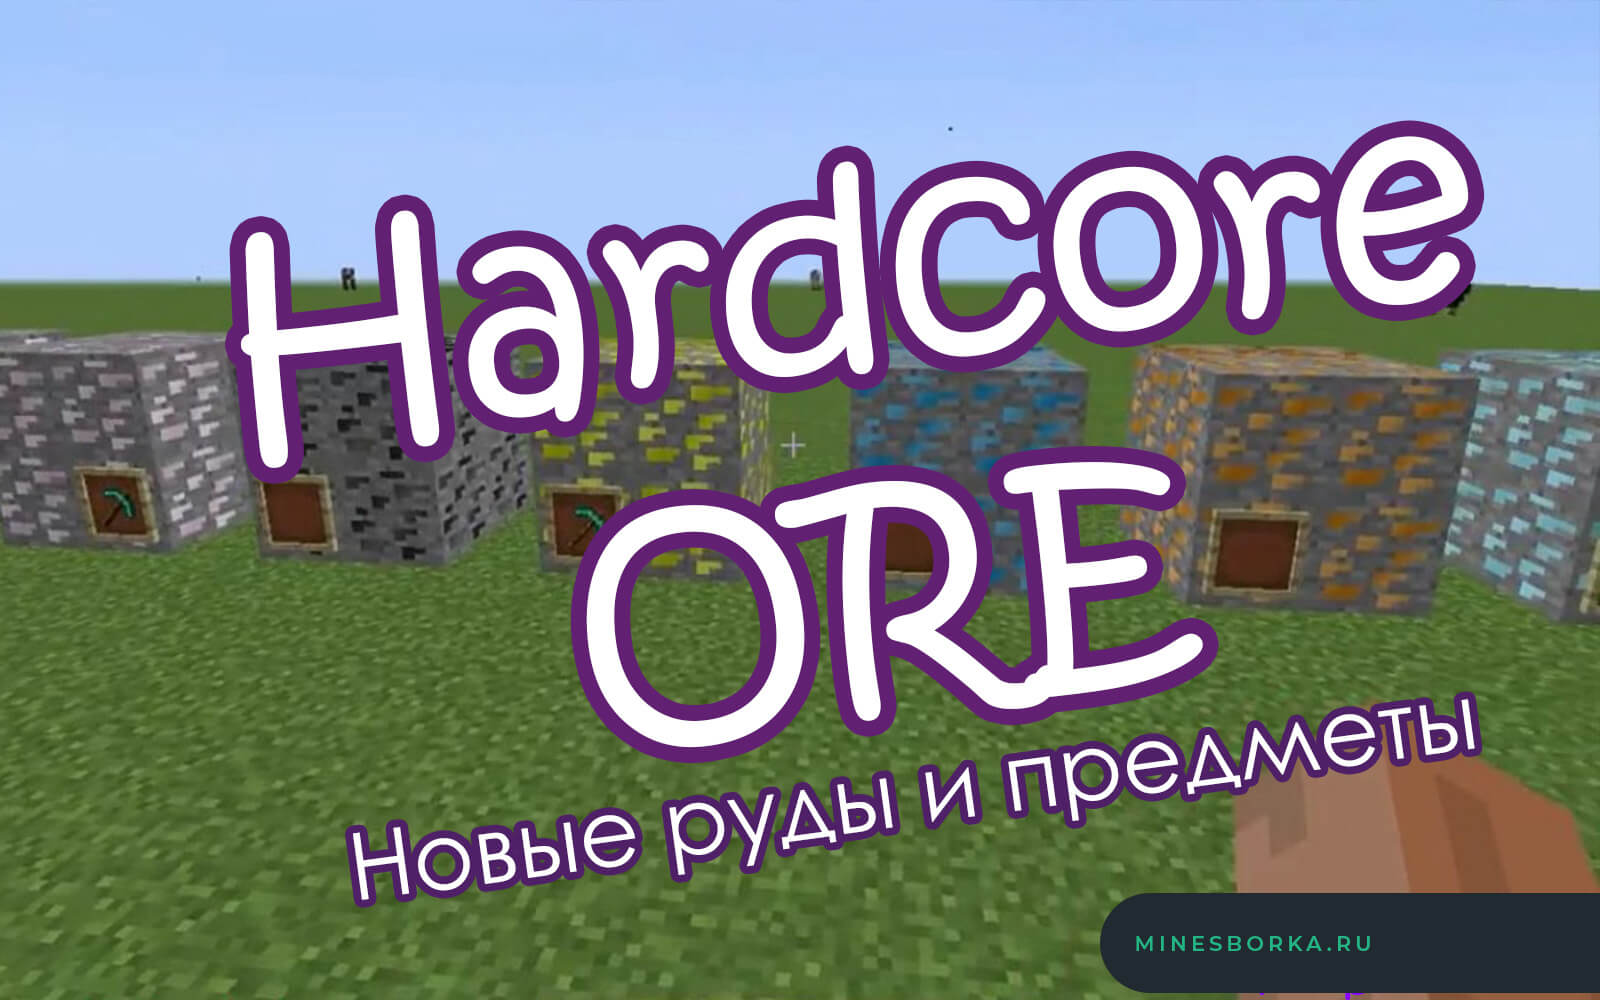 Скачать мод Hardcore ORE для minecraft | Новые руды, пыли, слитки, блоки различных металлов 1.12.2